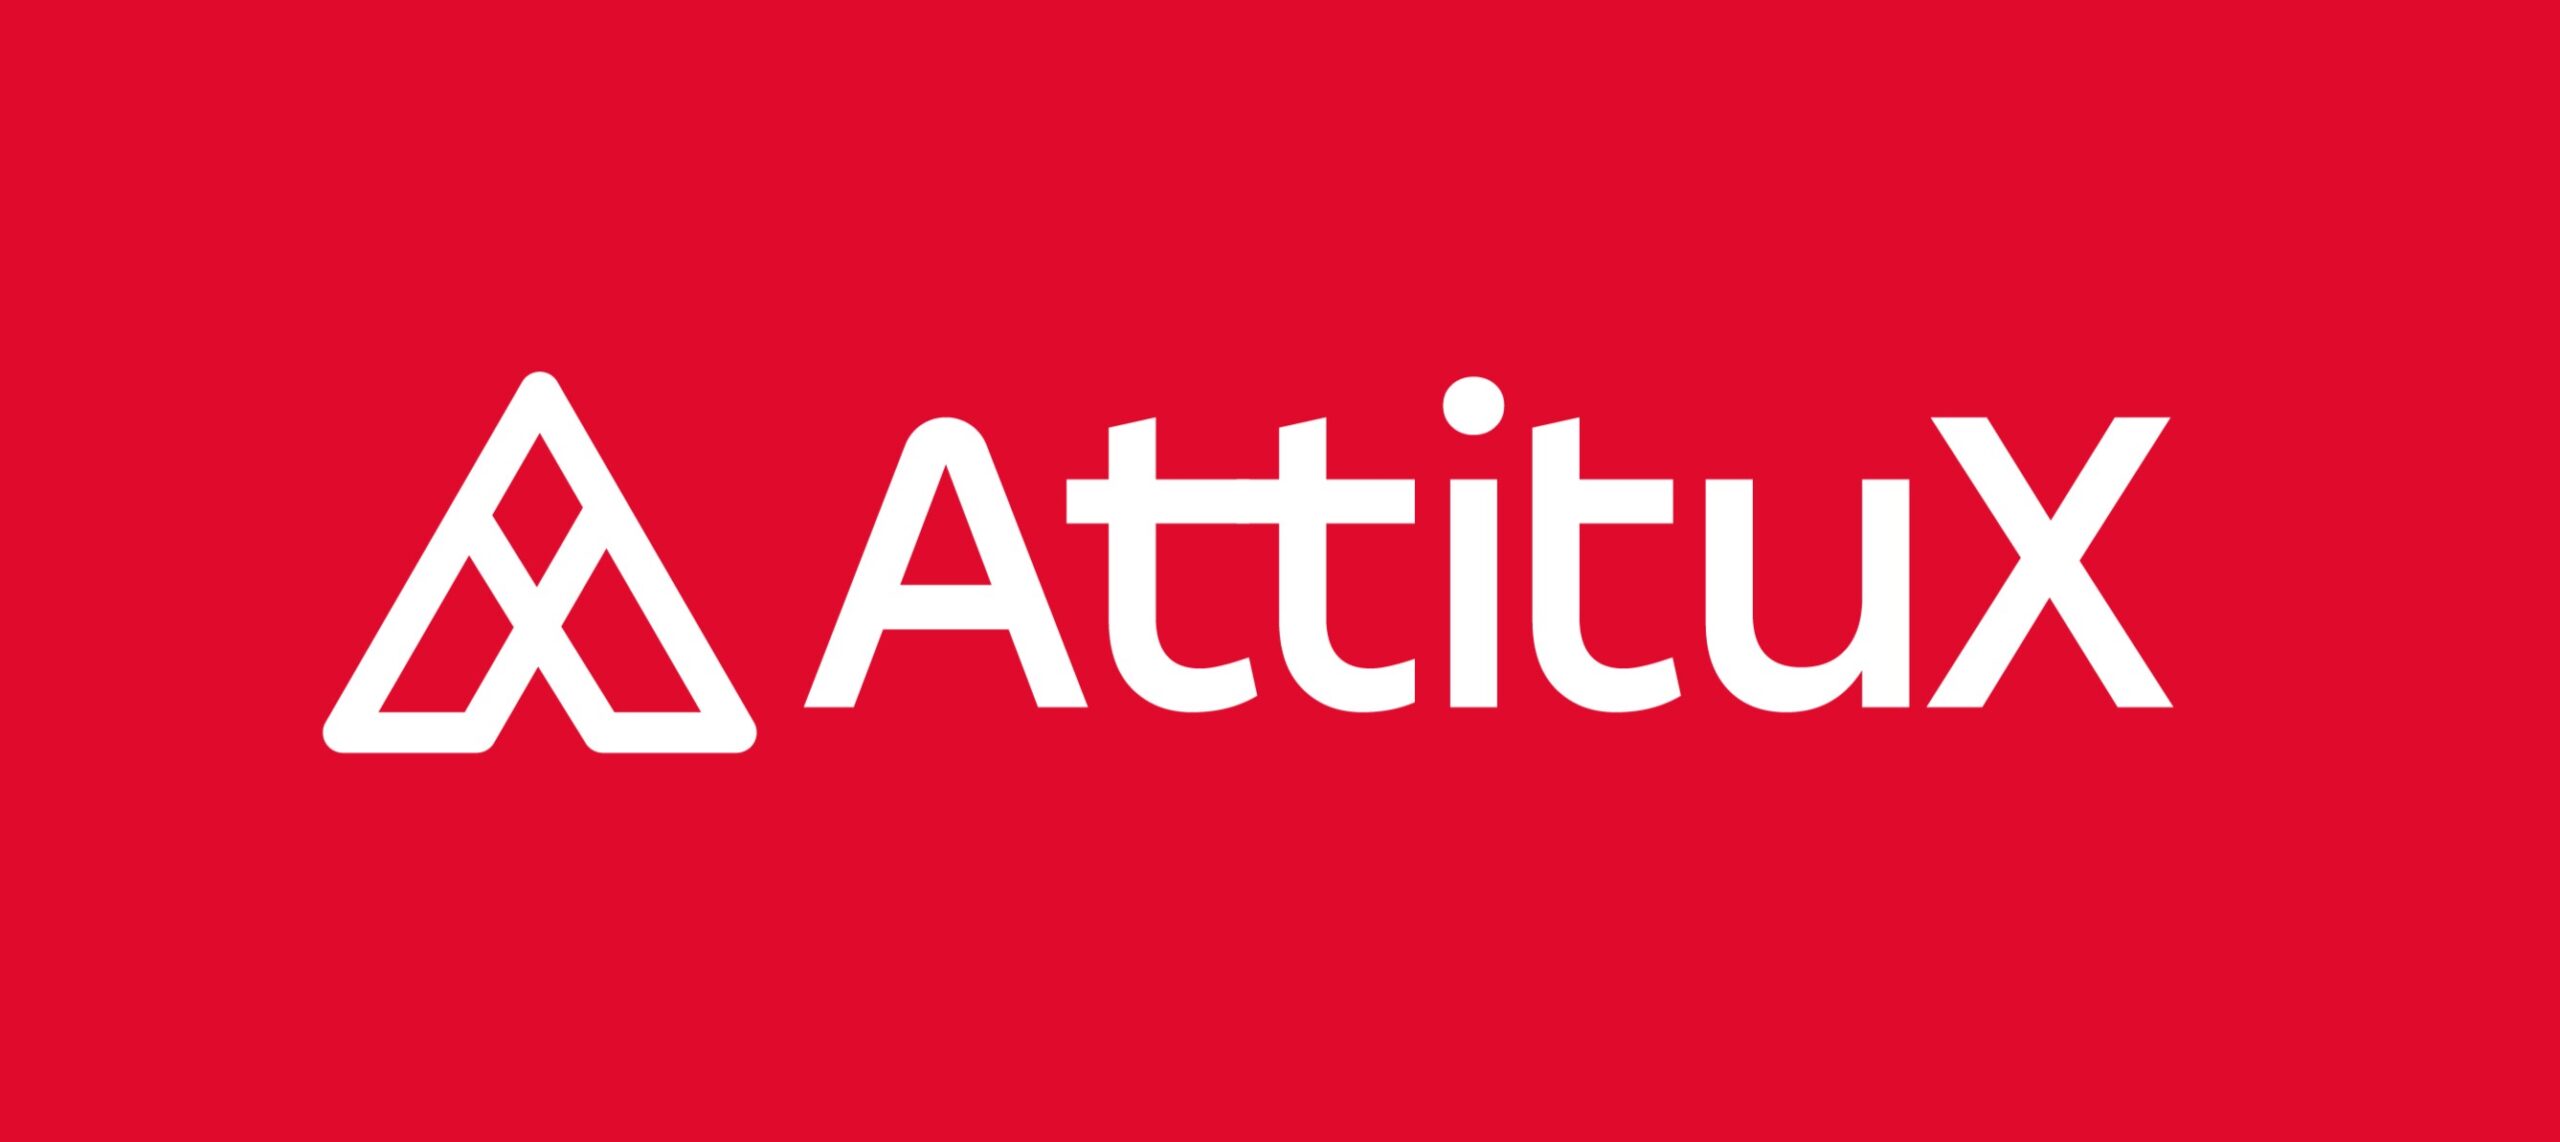 Attitux